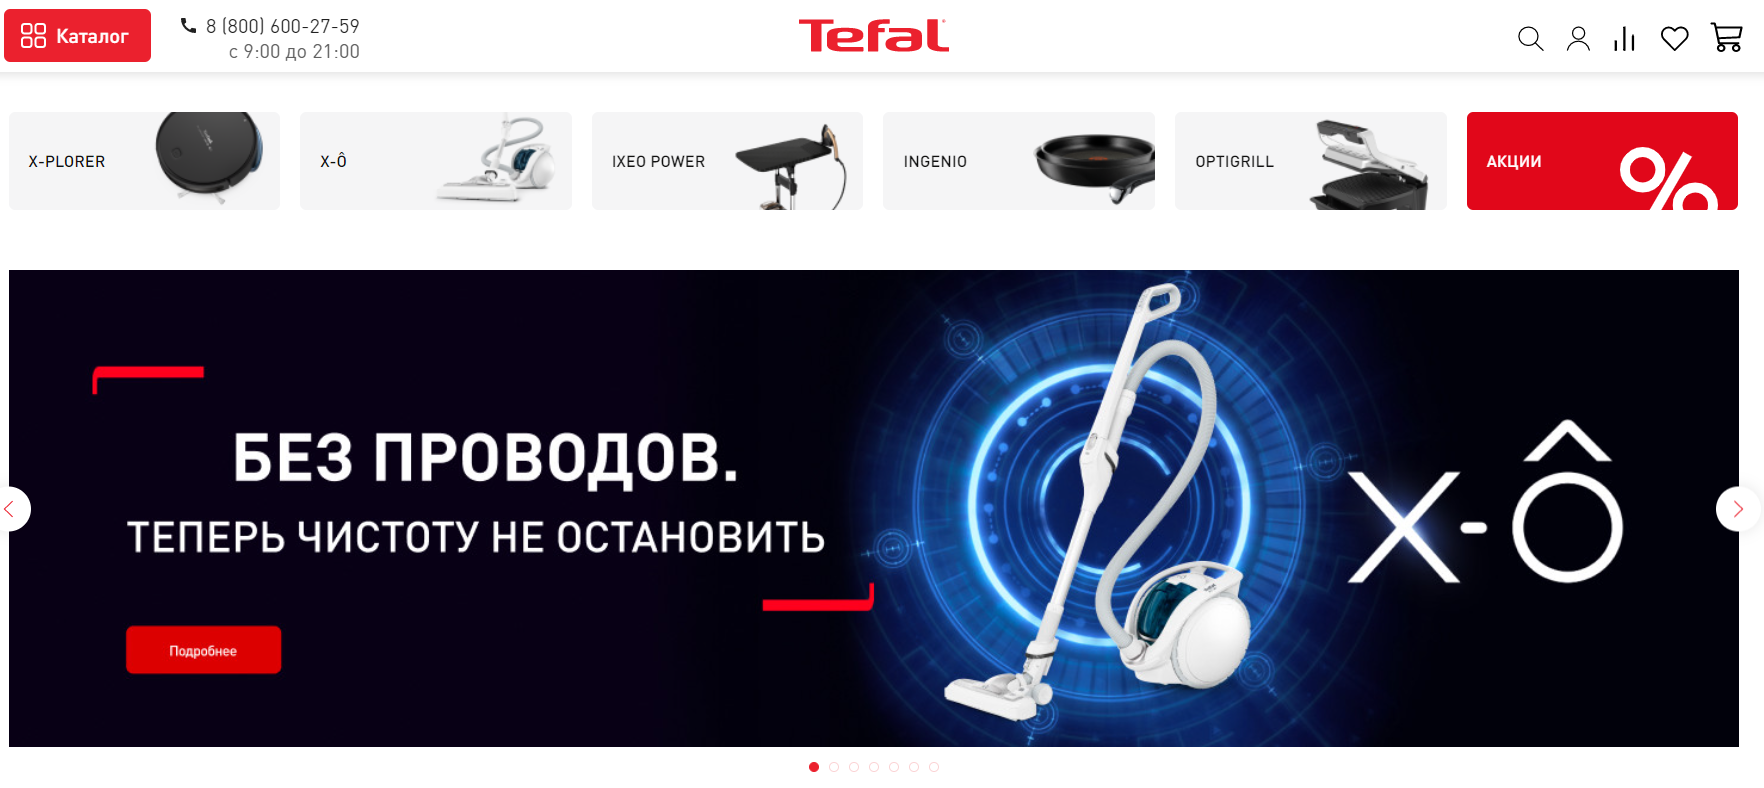 Tefal официальный сайт интернет-магазина